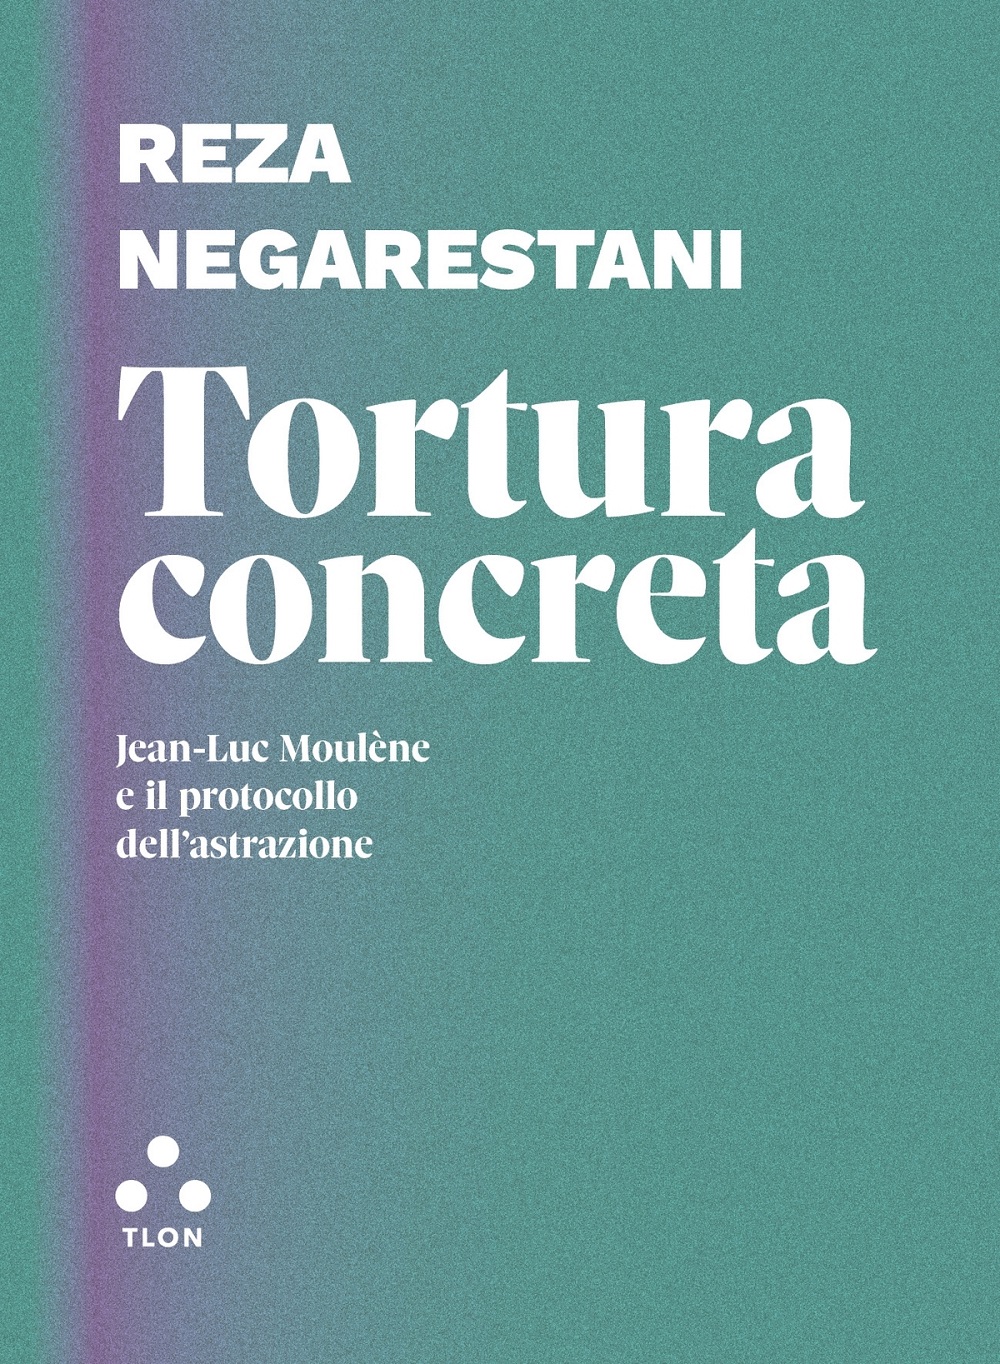 Reza Negarestani ‒ Tortura concreta. Jean Luc Moulène e il protocollo dell'astrazione (Tlon, Roma 2022)